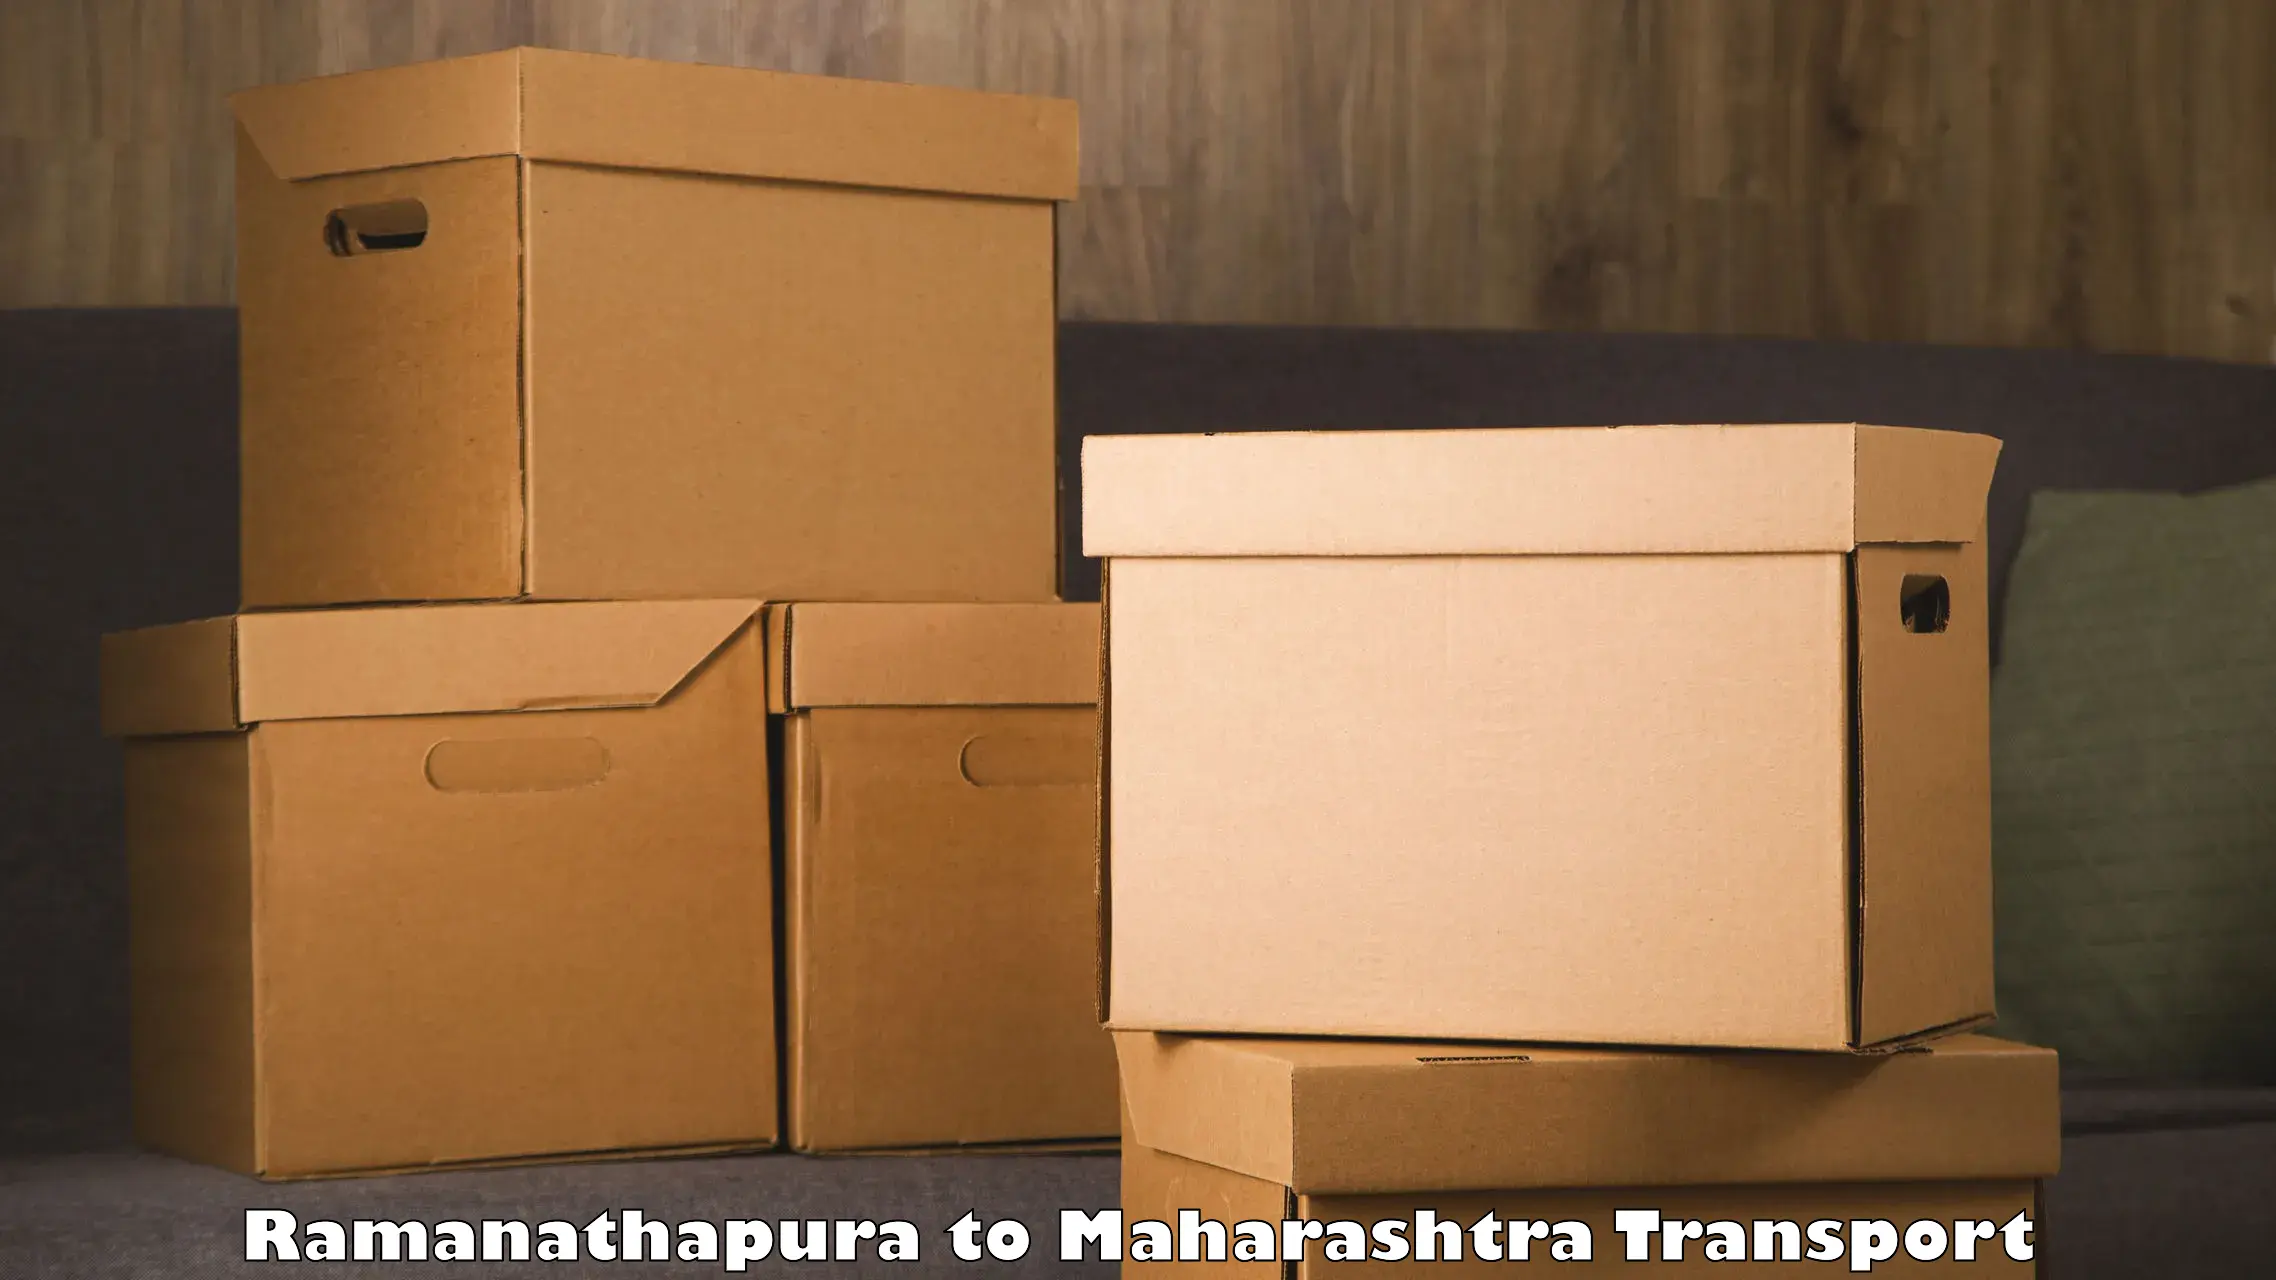 Lorry transport service Ramanathapura to Brahmapuri